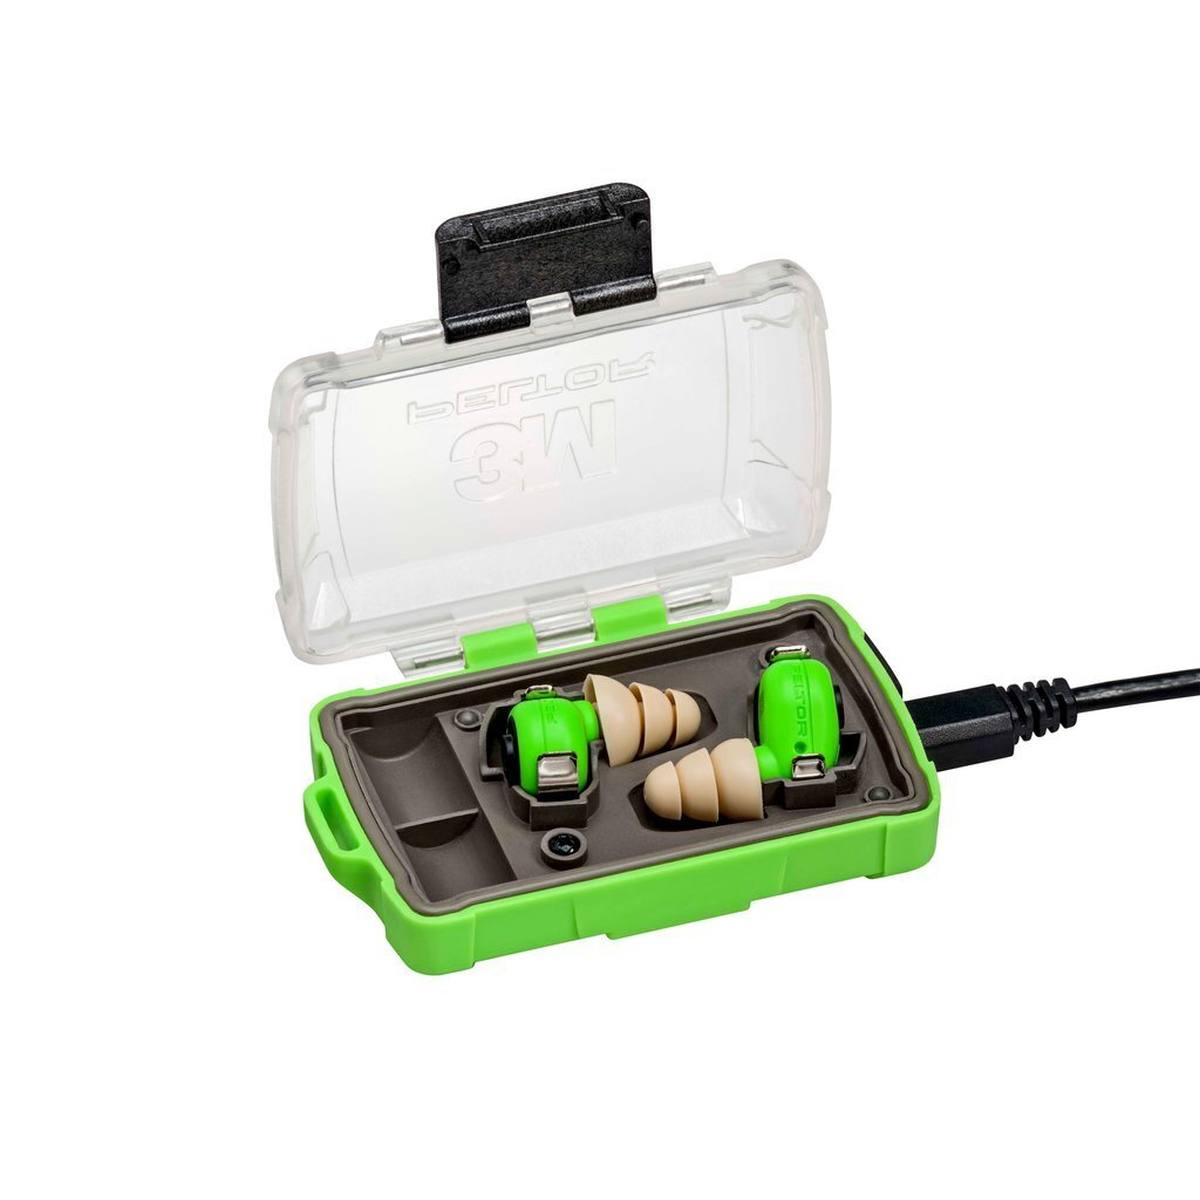 3M PELTOR EEP-100 EU Bouchons d'oreille électroniques, kit : les bouchons et la station de recharge (avec couvercle fermé et ports USB) sont classés IP-54 et résistants à l'eau